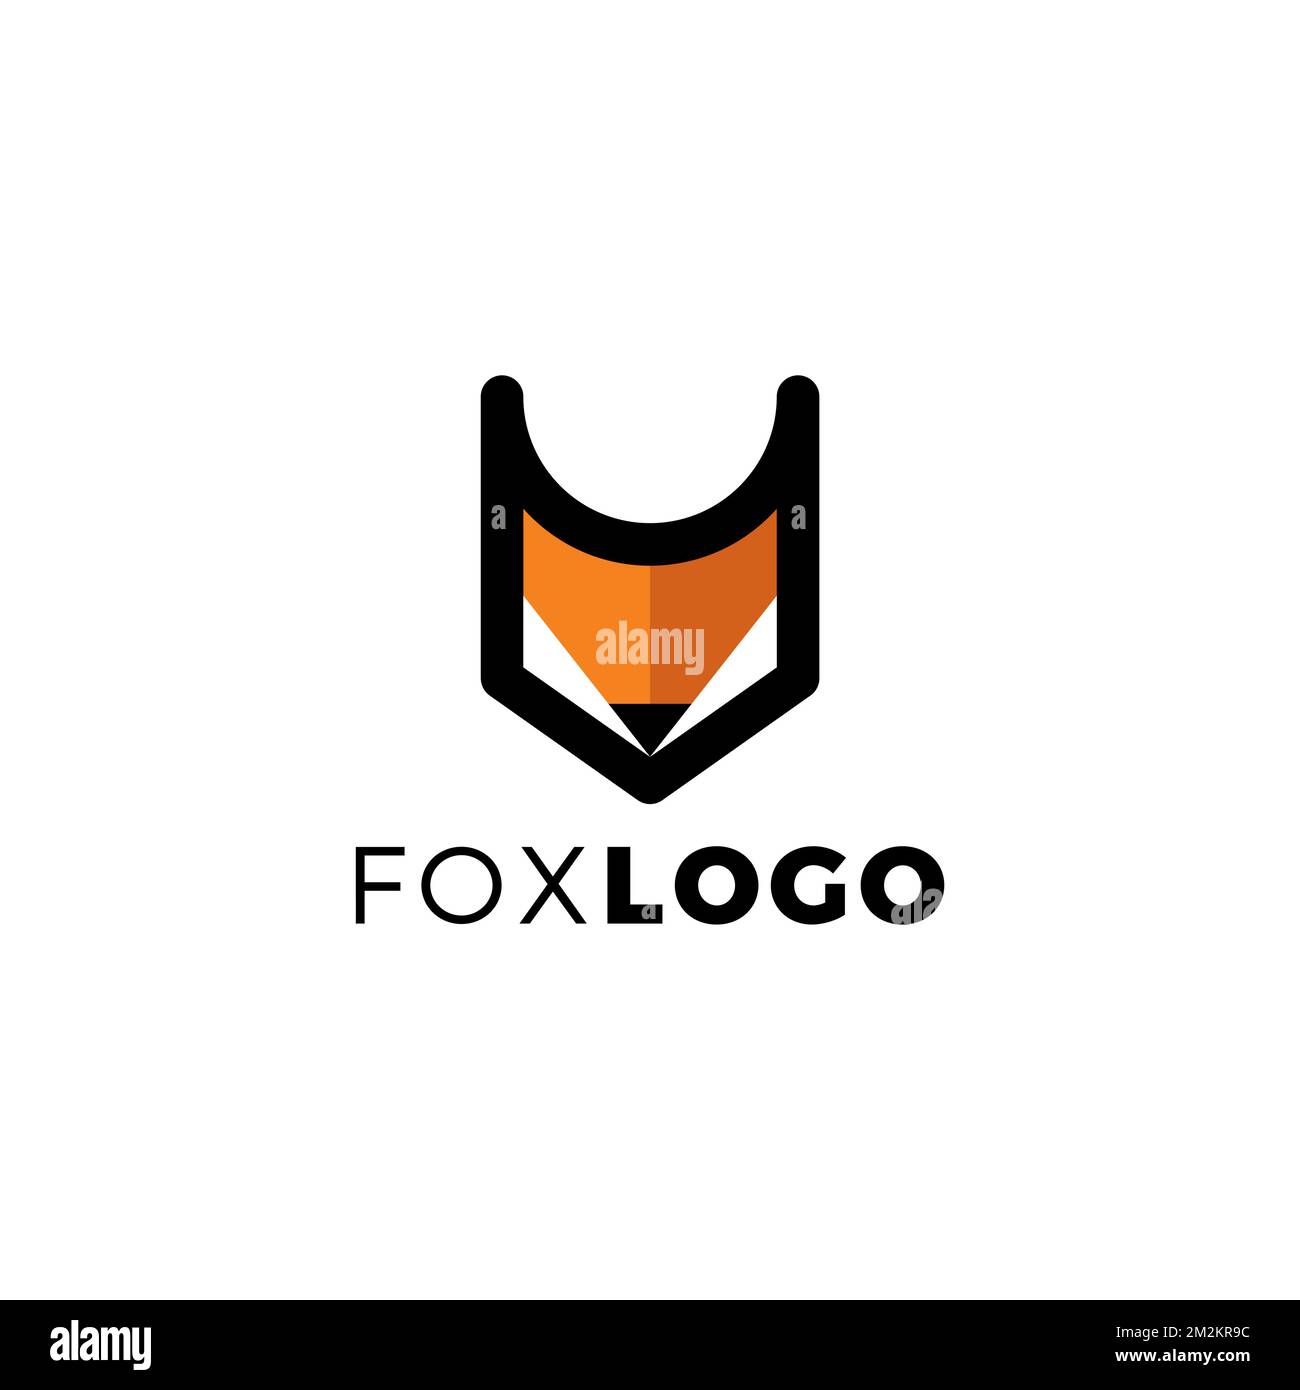 Einzigartiges Design Mit Dem Fox Logo. Einfaches Design Von Fox. Fox-Symbol Stock Vektor